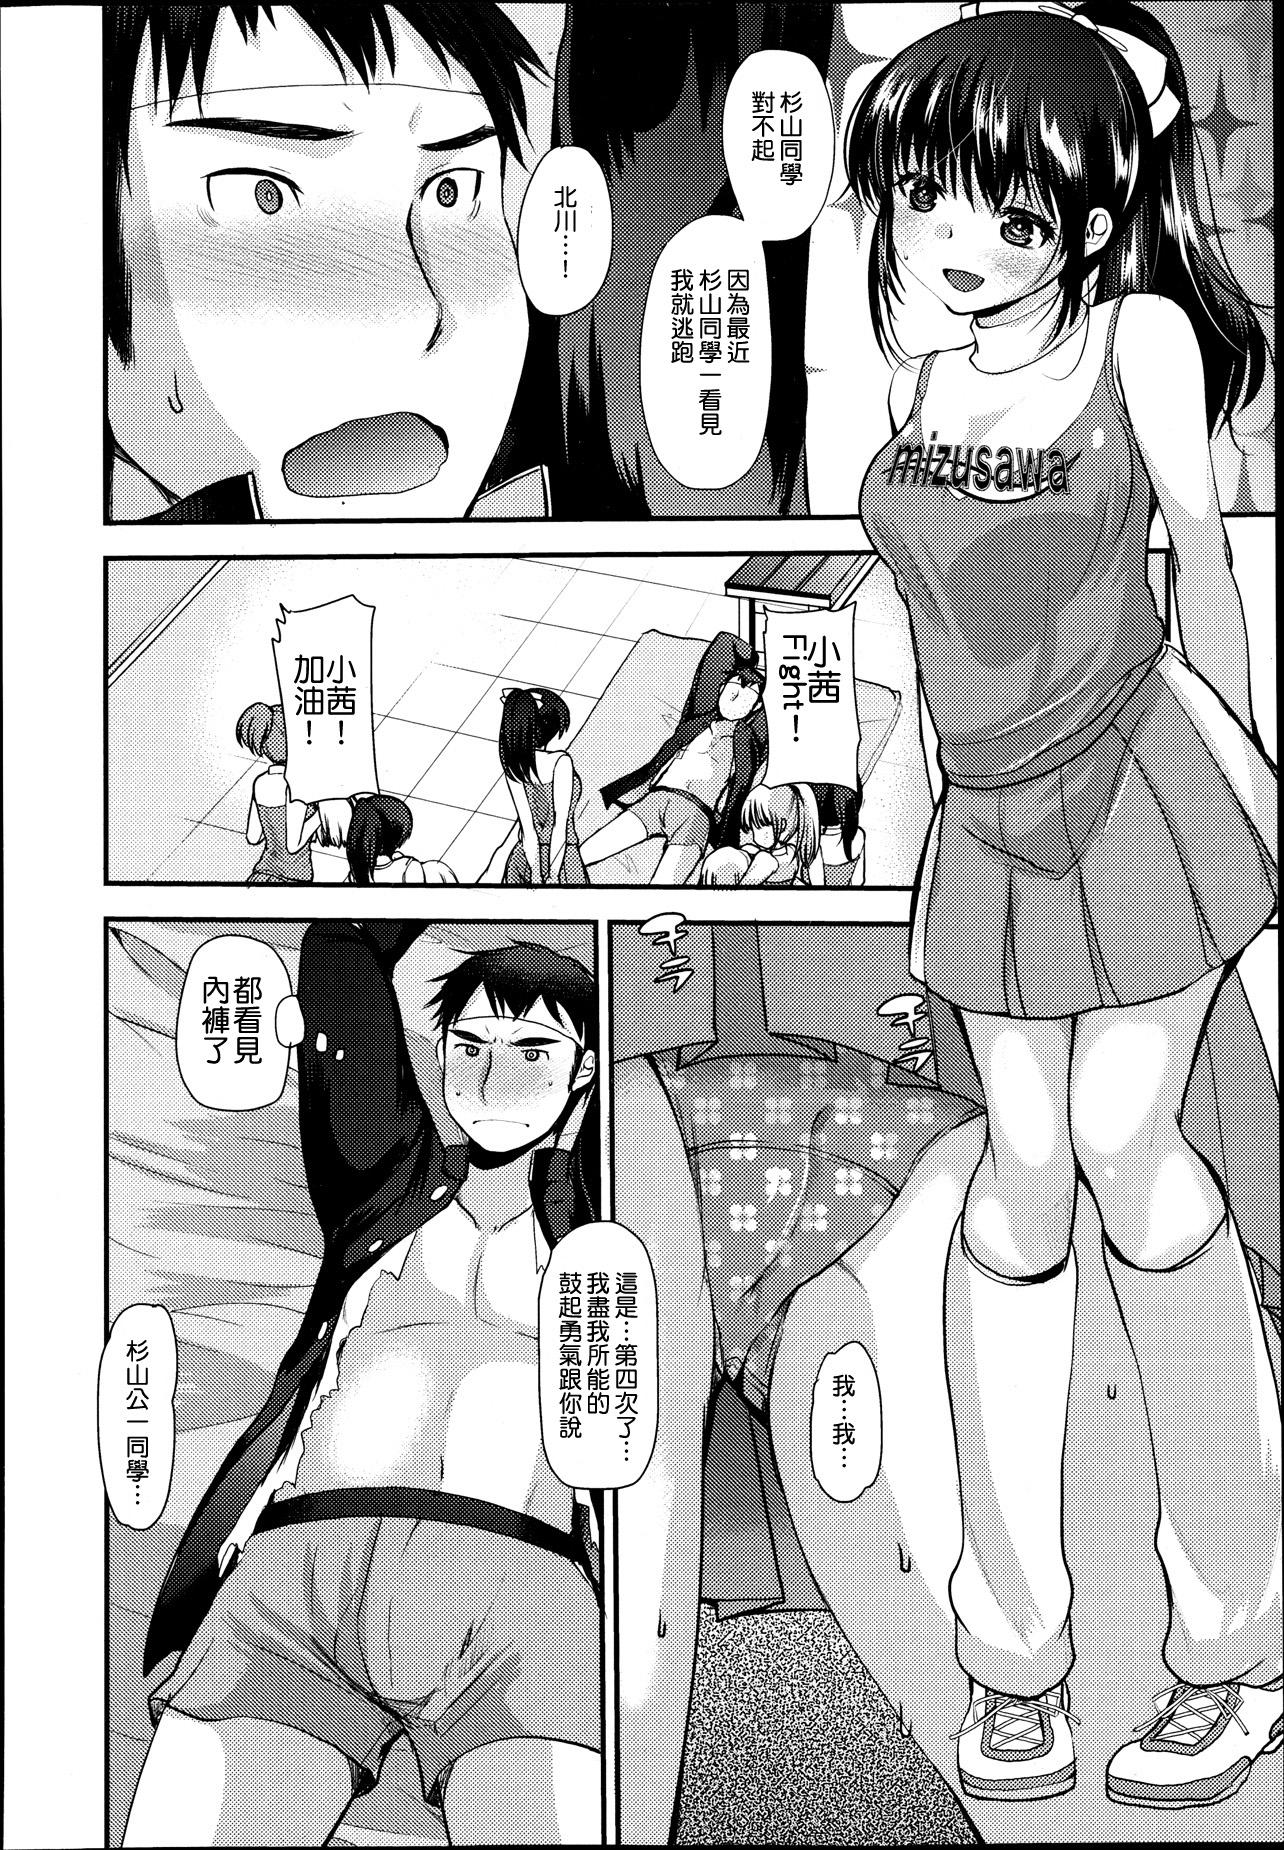 Sex Toys Watashi ja dame desu ka!? Peituda - Page 2